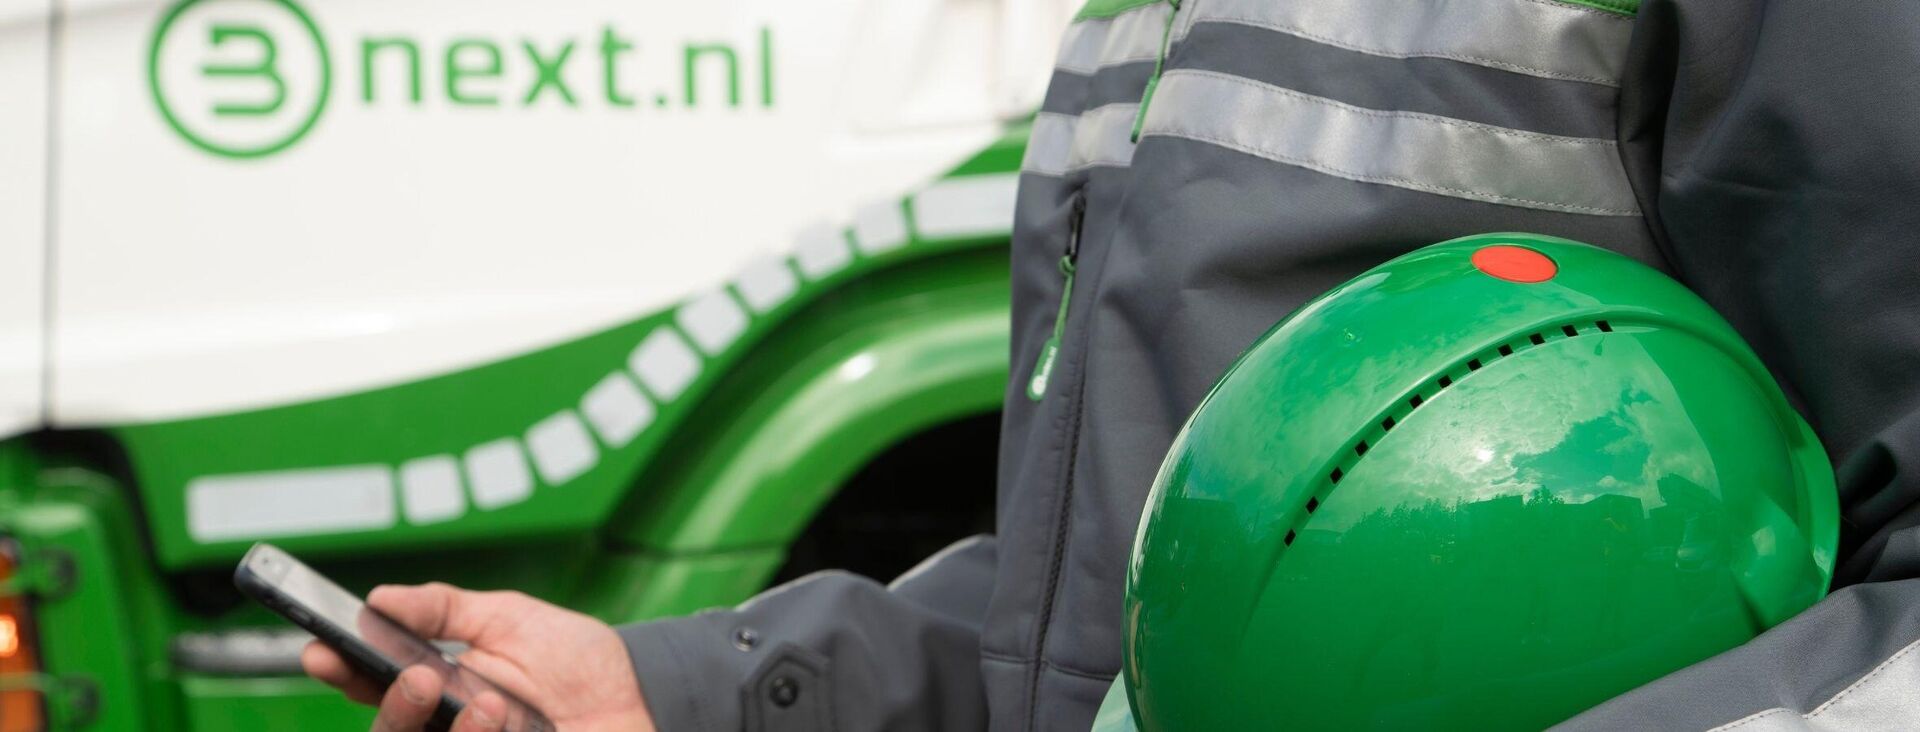 Bnext.nl introduceert CO2-uitstoot rapportage voor bedrijven